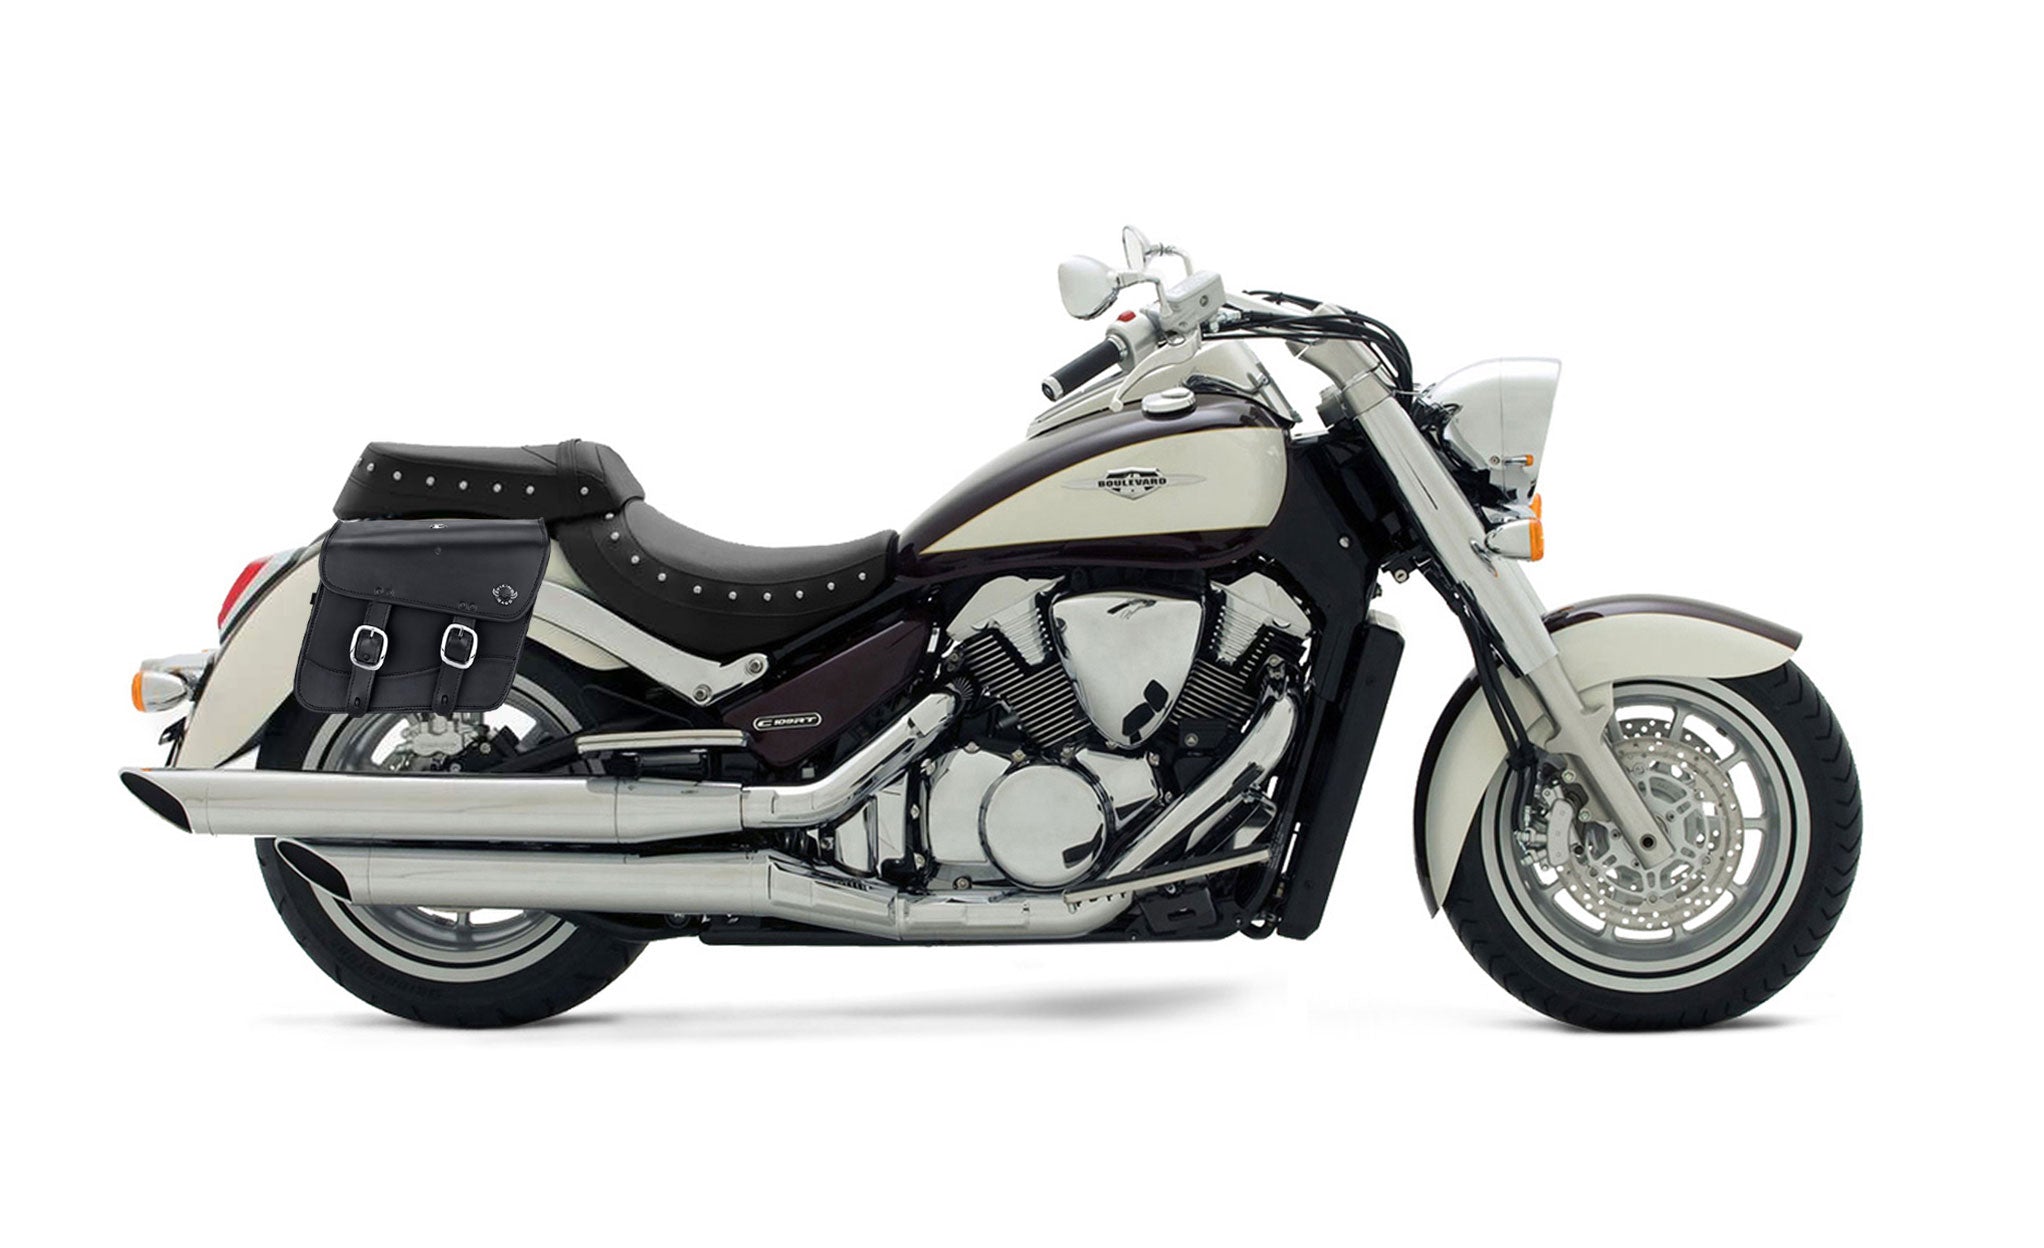 Viking Thor Medium Suzuki Boulevard C109 Leather Motorcycle Saddlebags on Bike Photo @expand